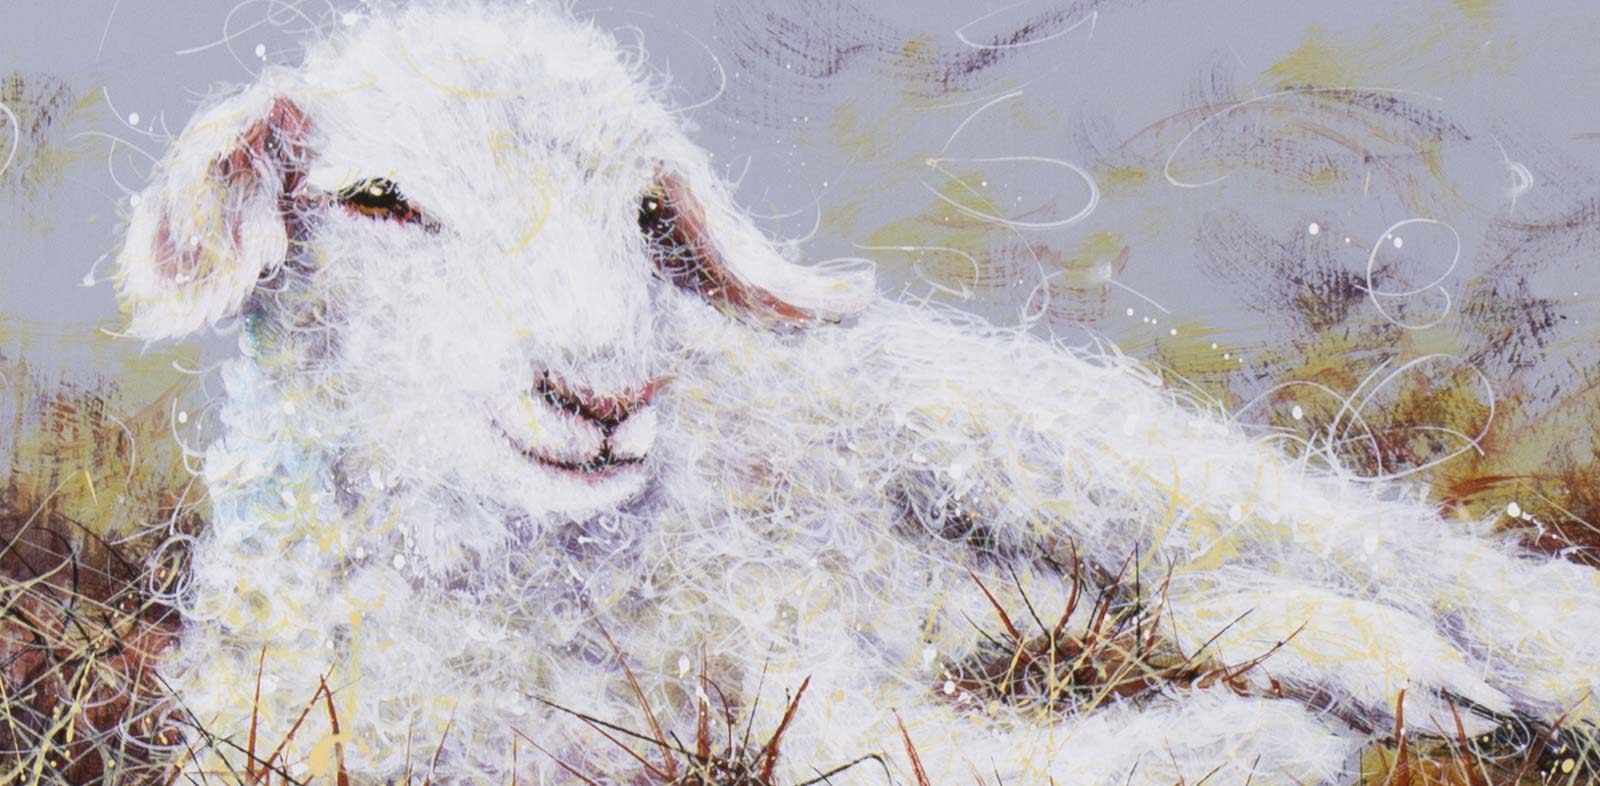 Larry the Lamb